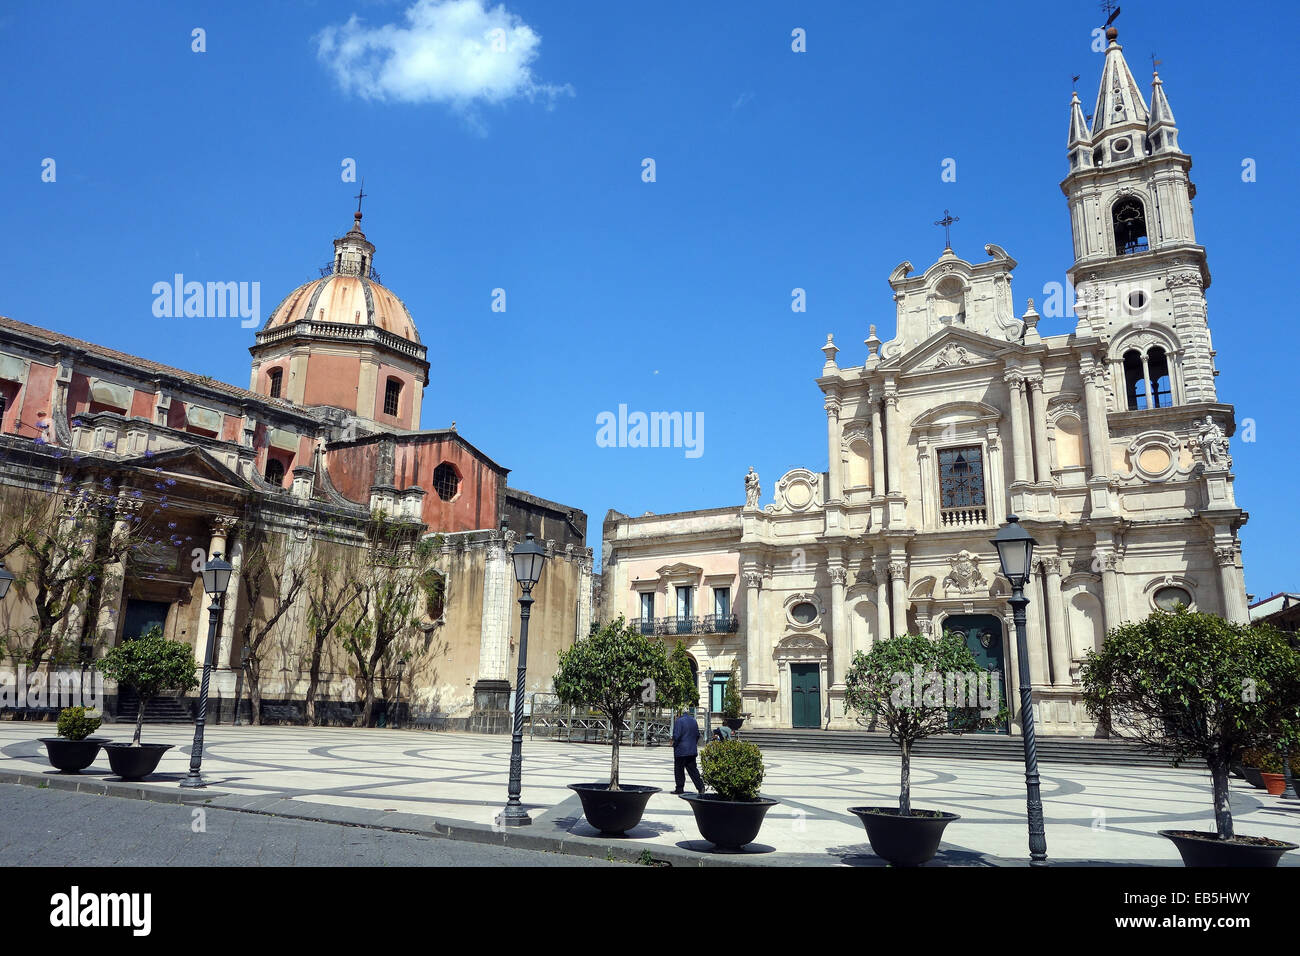 Noto una città di Siracusa, in Sicilia, Italia.Sito del Patrimonio Mondiale Foto Stock